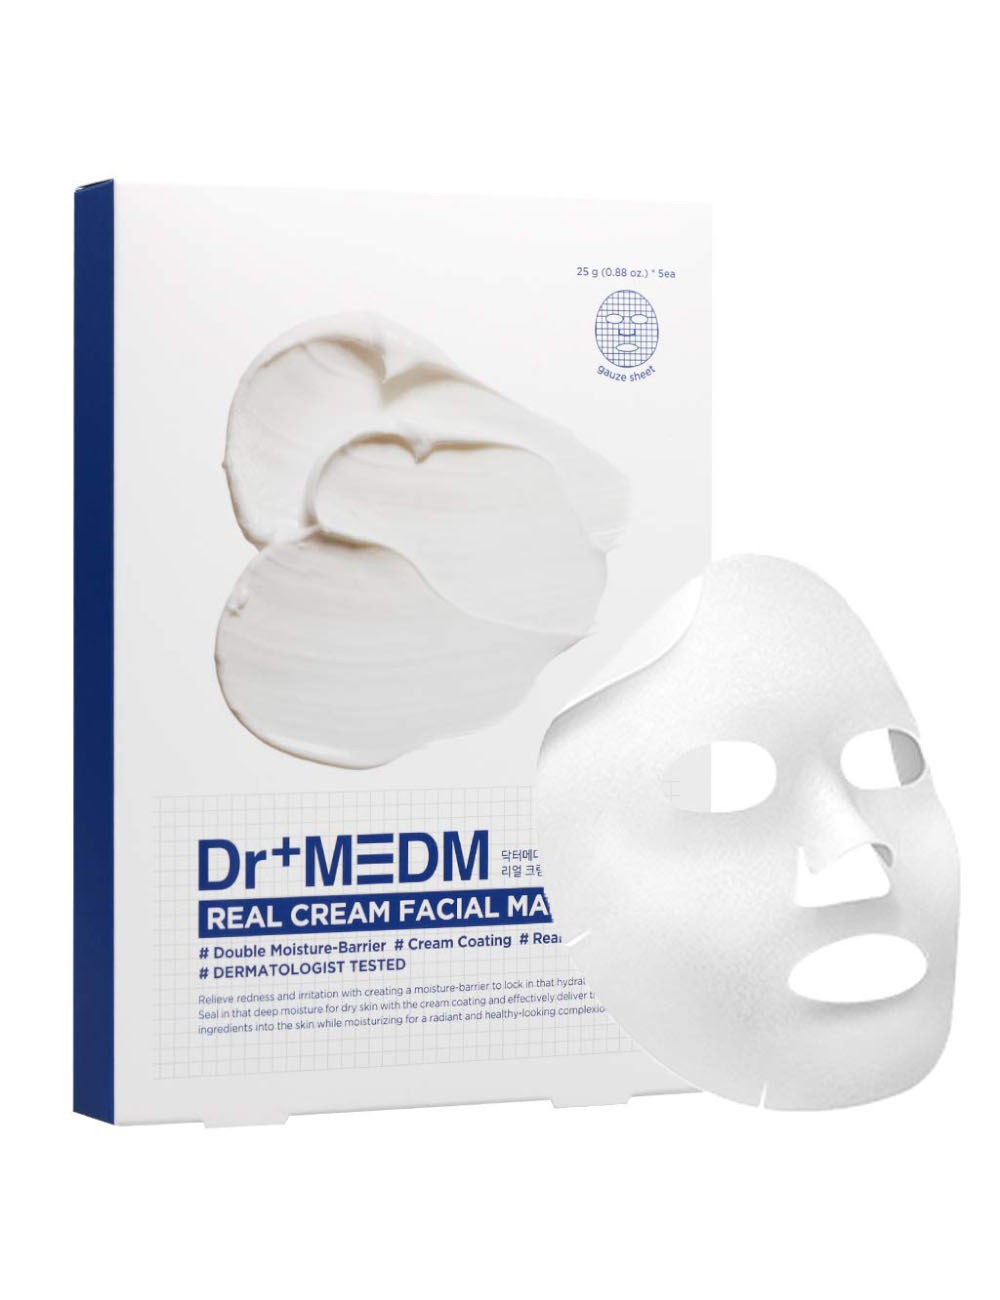 Dr+MEDM Real Cream Facial Mask